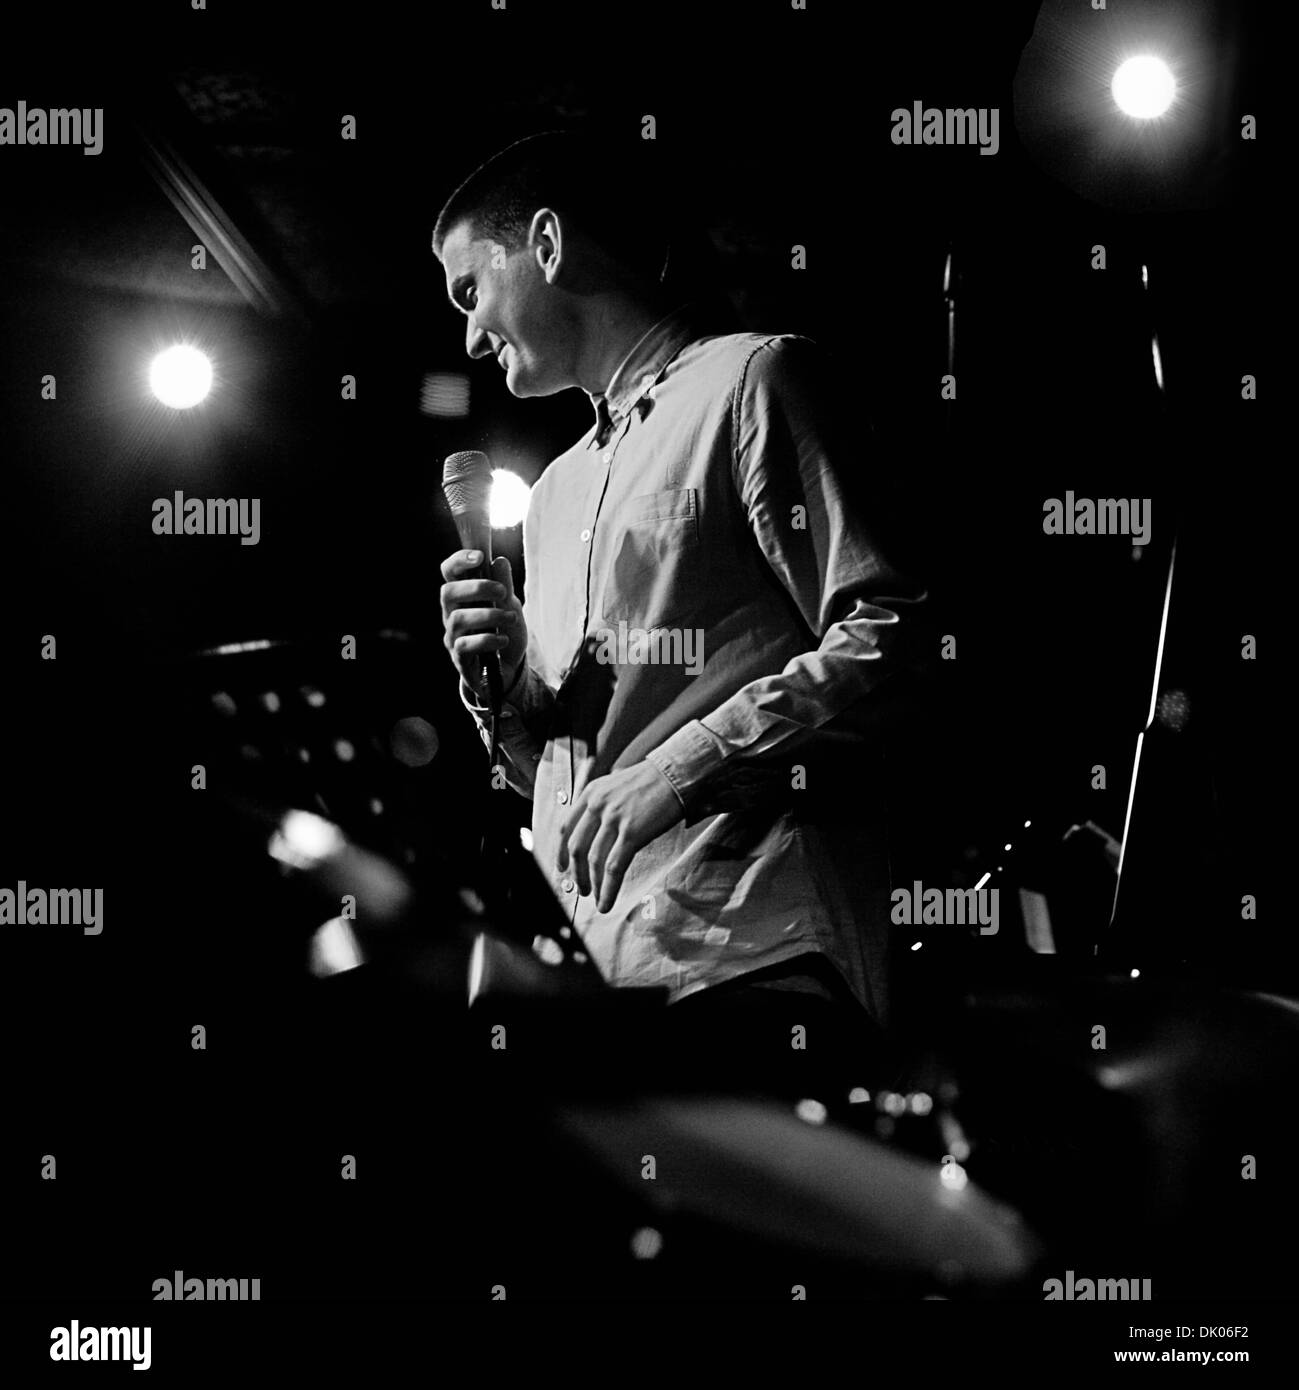 Jazz Singer Josh Kyle performs in London, UK Stock Photo